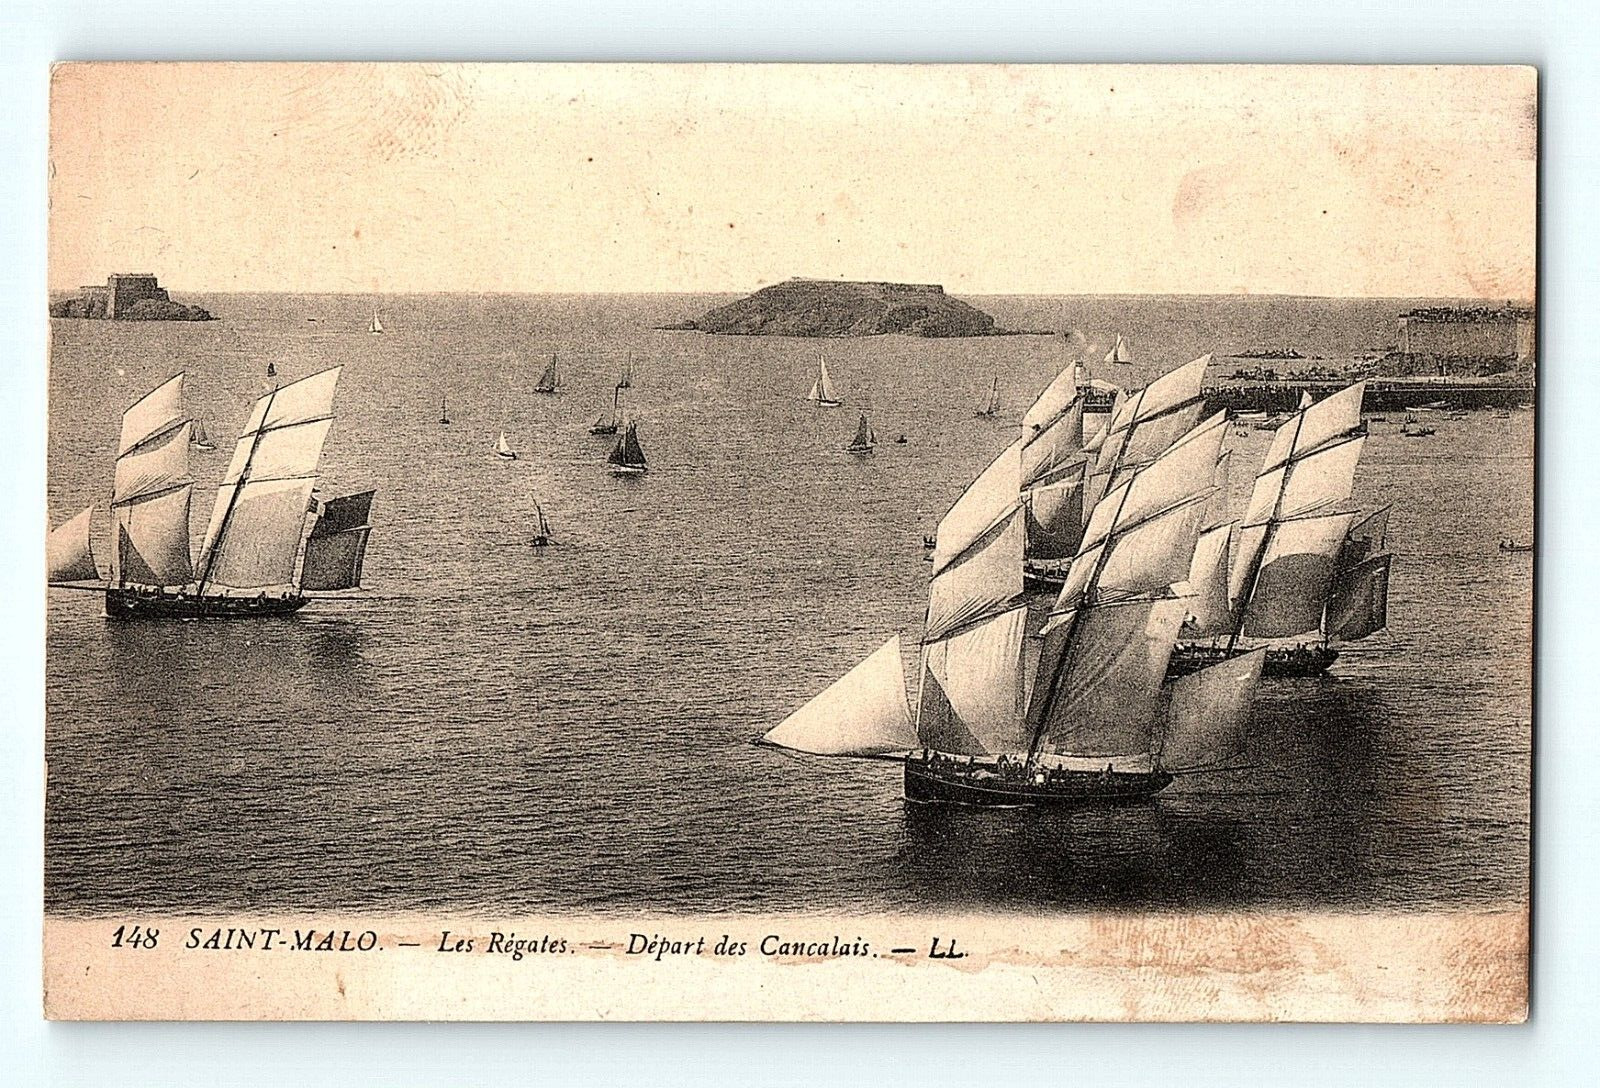 Saint-Malo Les Régates Regattas Departure of Cancalais Ship French Postcard E4